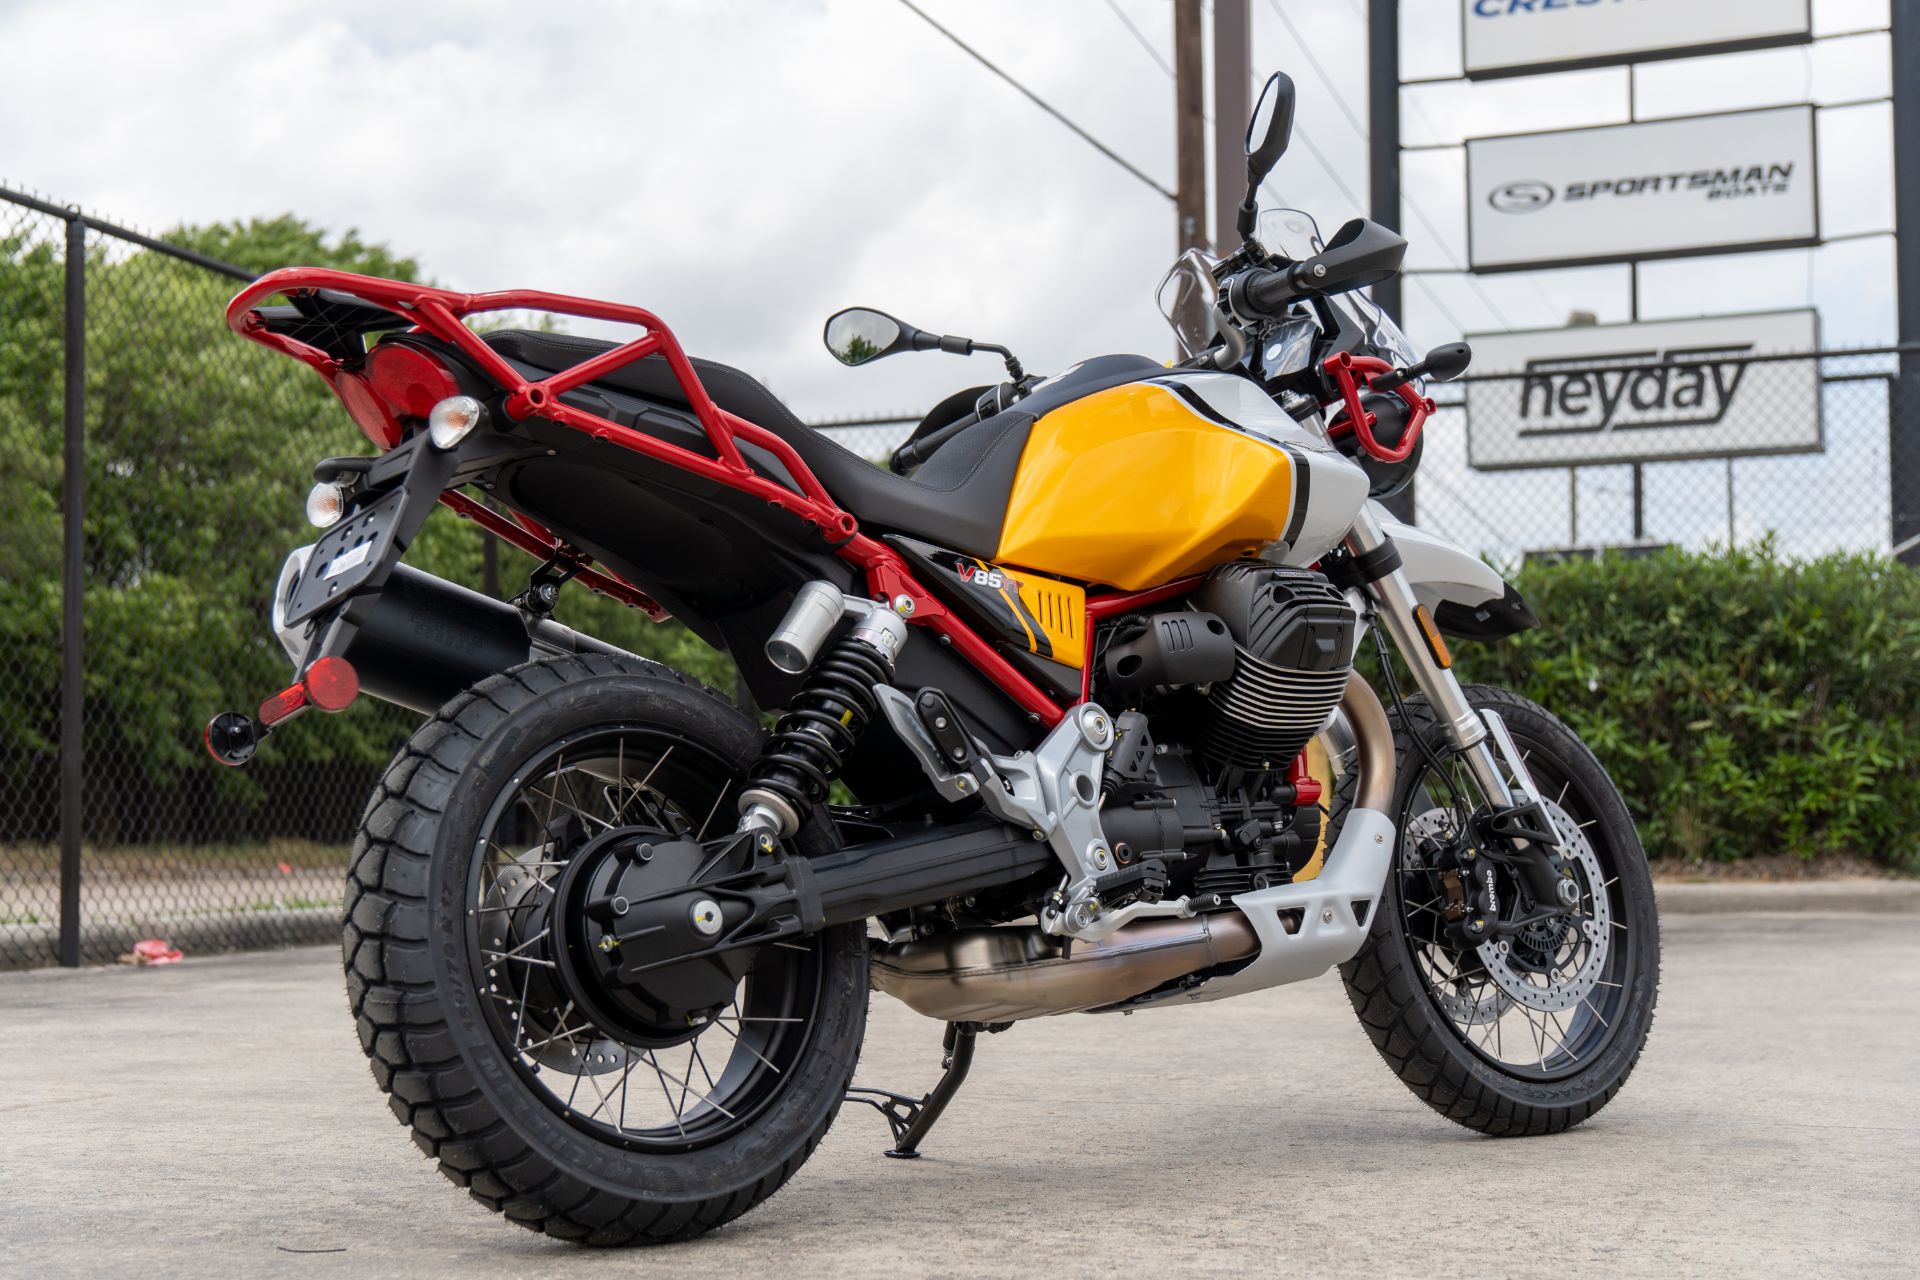 2022 Moto Guzzi V85 TT Adventure in Houston, Texas - Photo 3